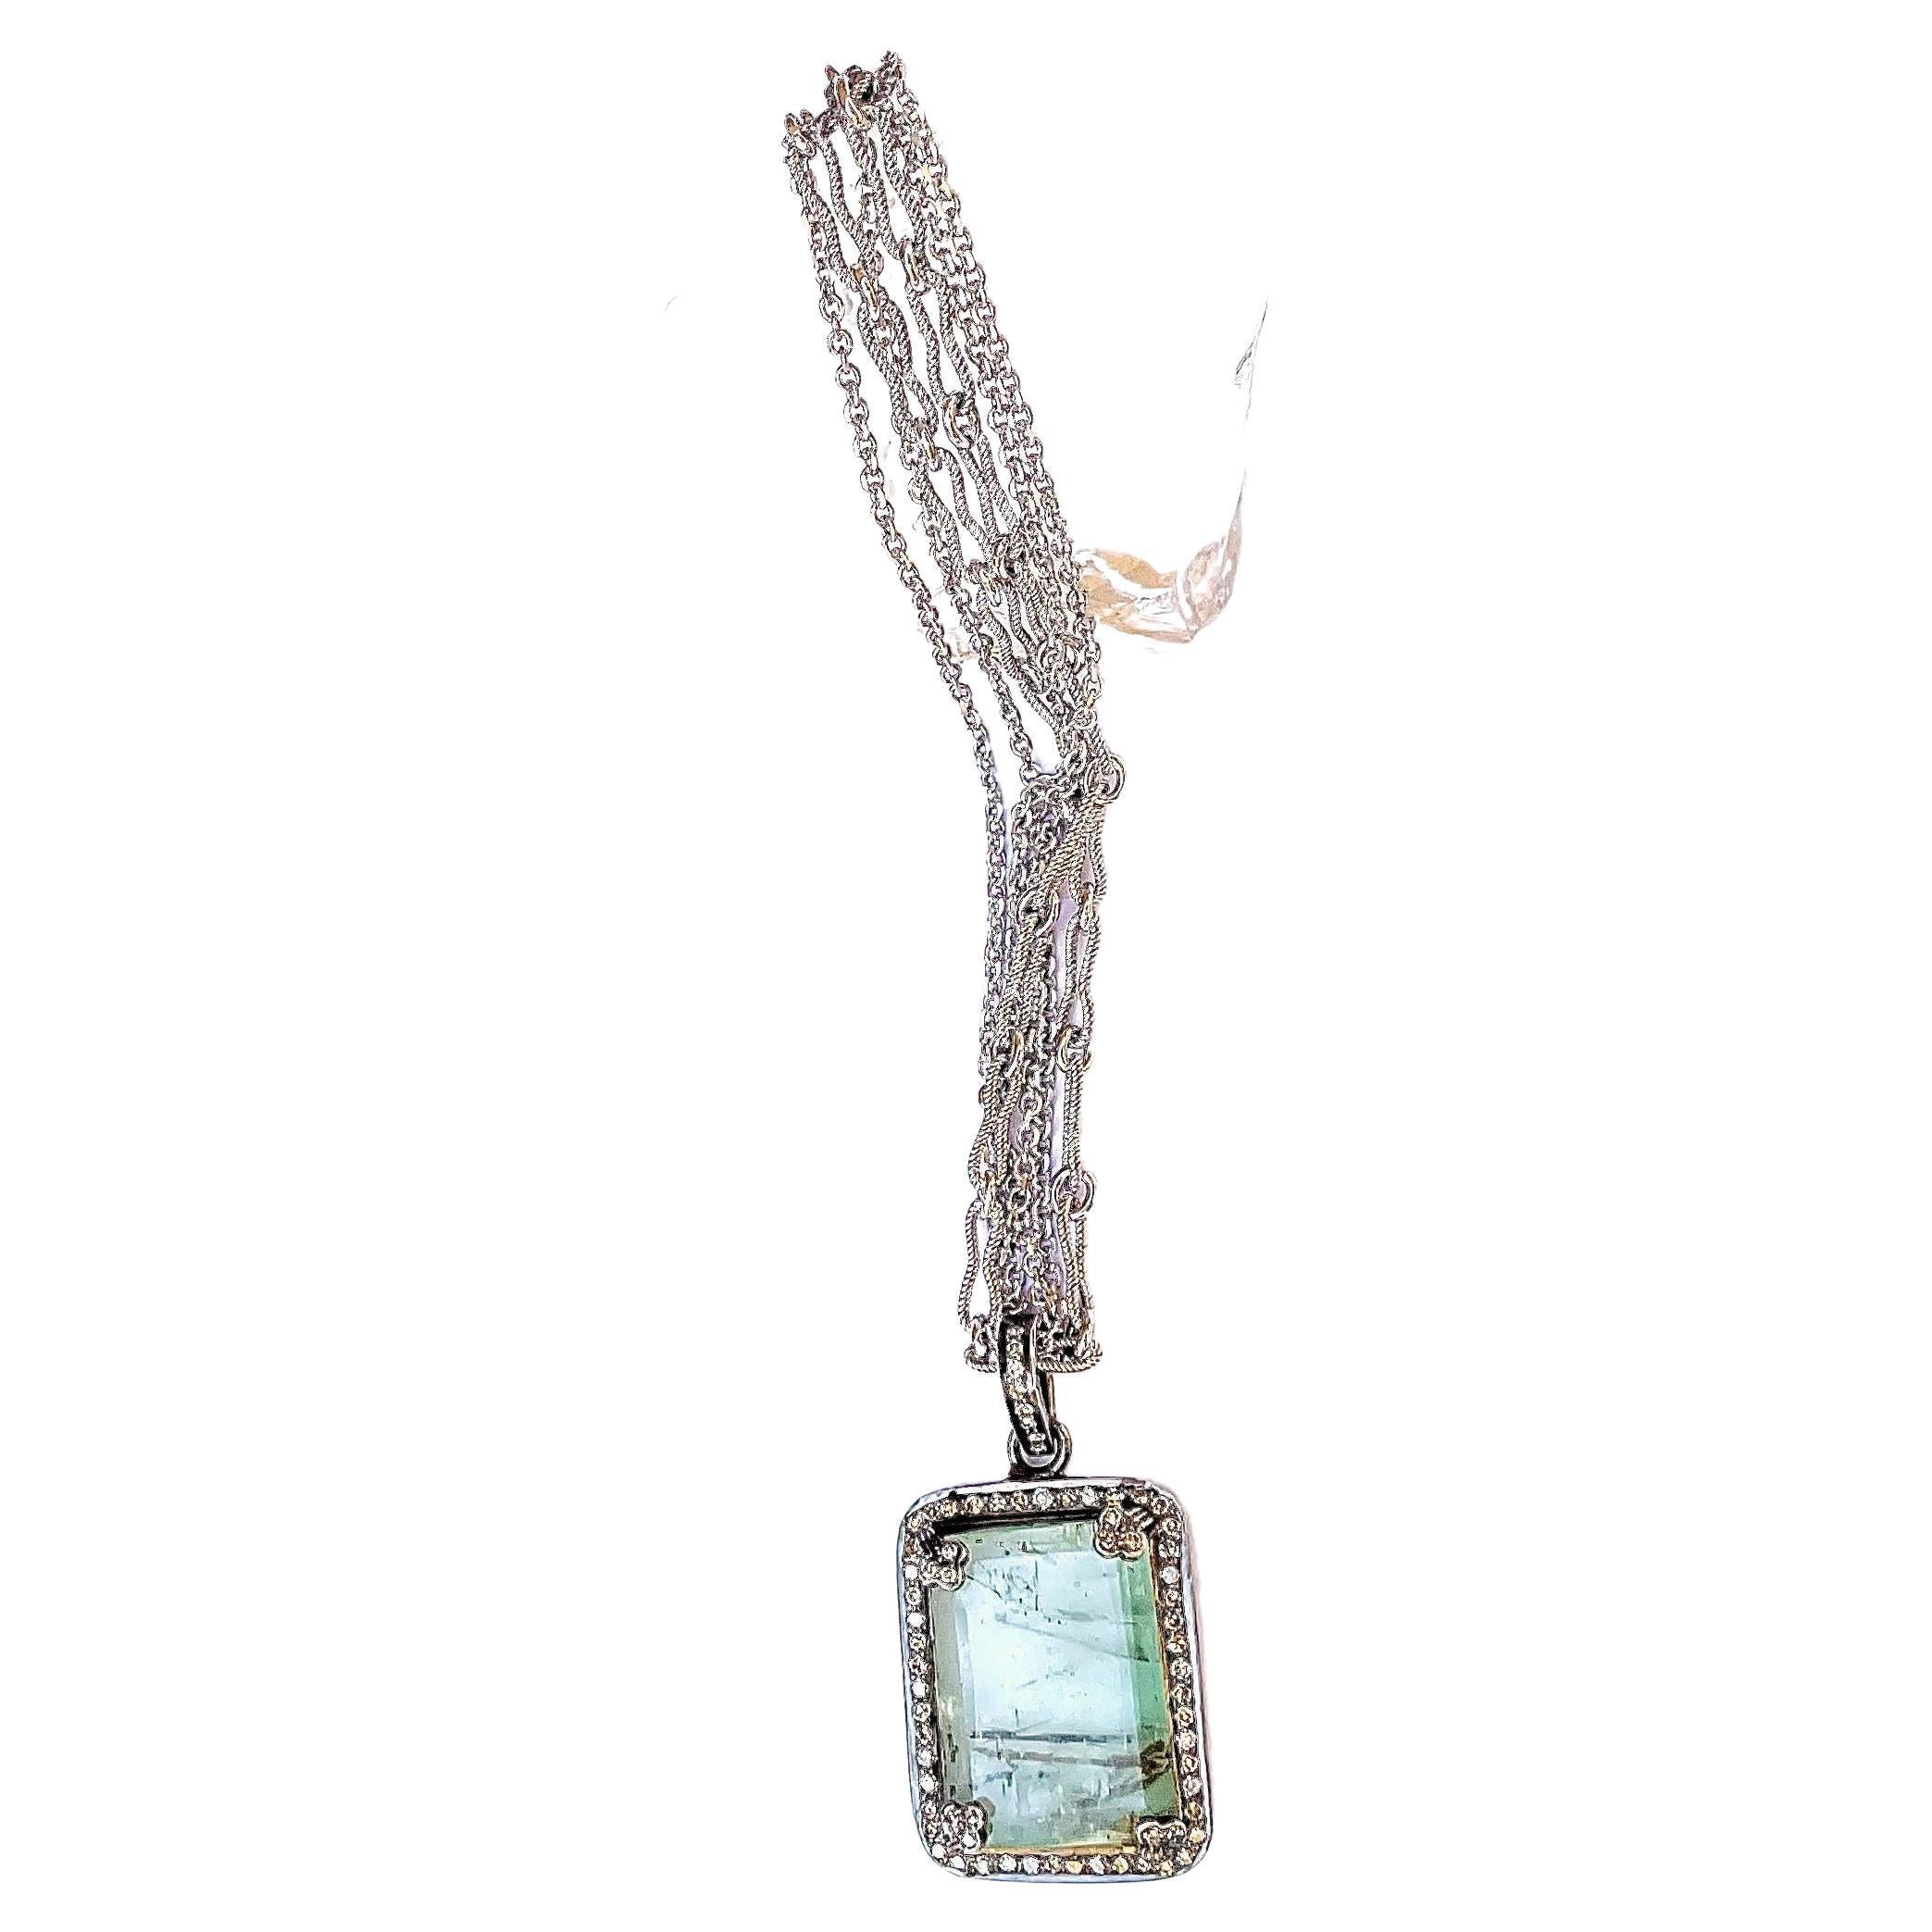 Beschreibung
Die charaktervolle Halskette mit russischem Smaragd und Diamantanhänger hängt an einer dreifachen Kette.
Artikel Nr. N3681

Materialien und Gewicht
Smaragd, 24 x 19 mm, Rechteckschliff, 6,9 Karat.
Pave-Diamanten, 0,50 Karat.
Anhänger,